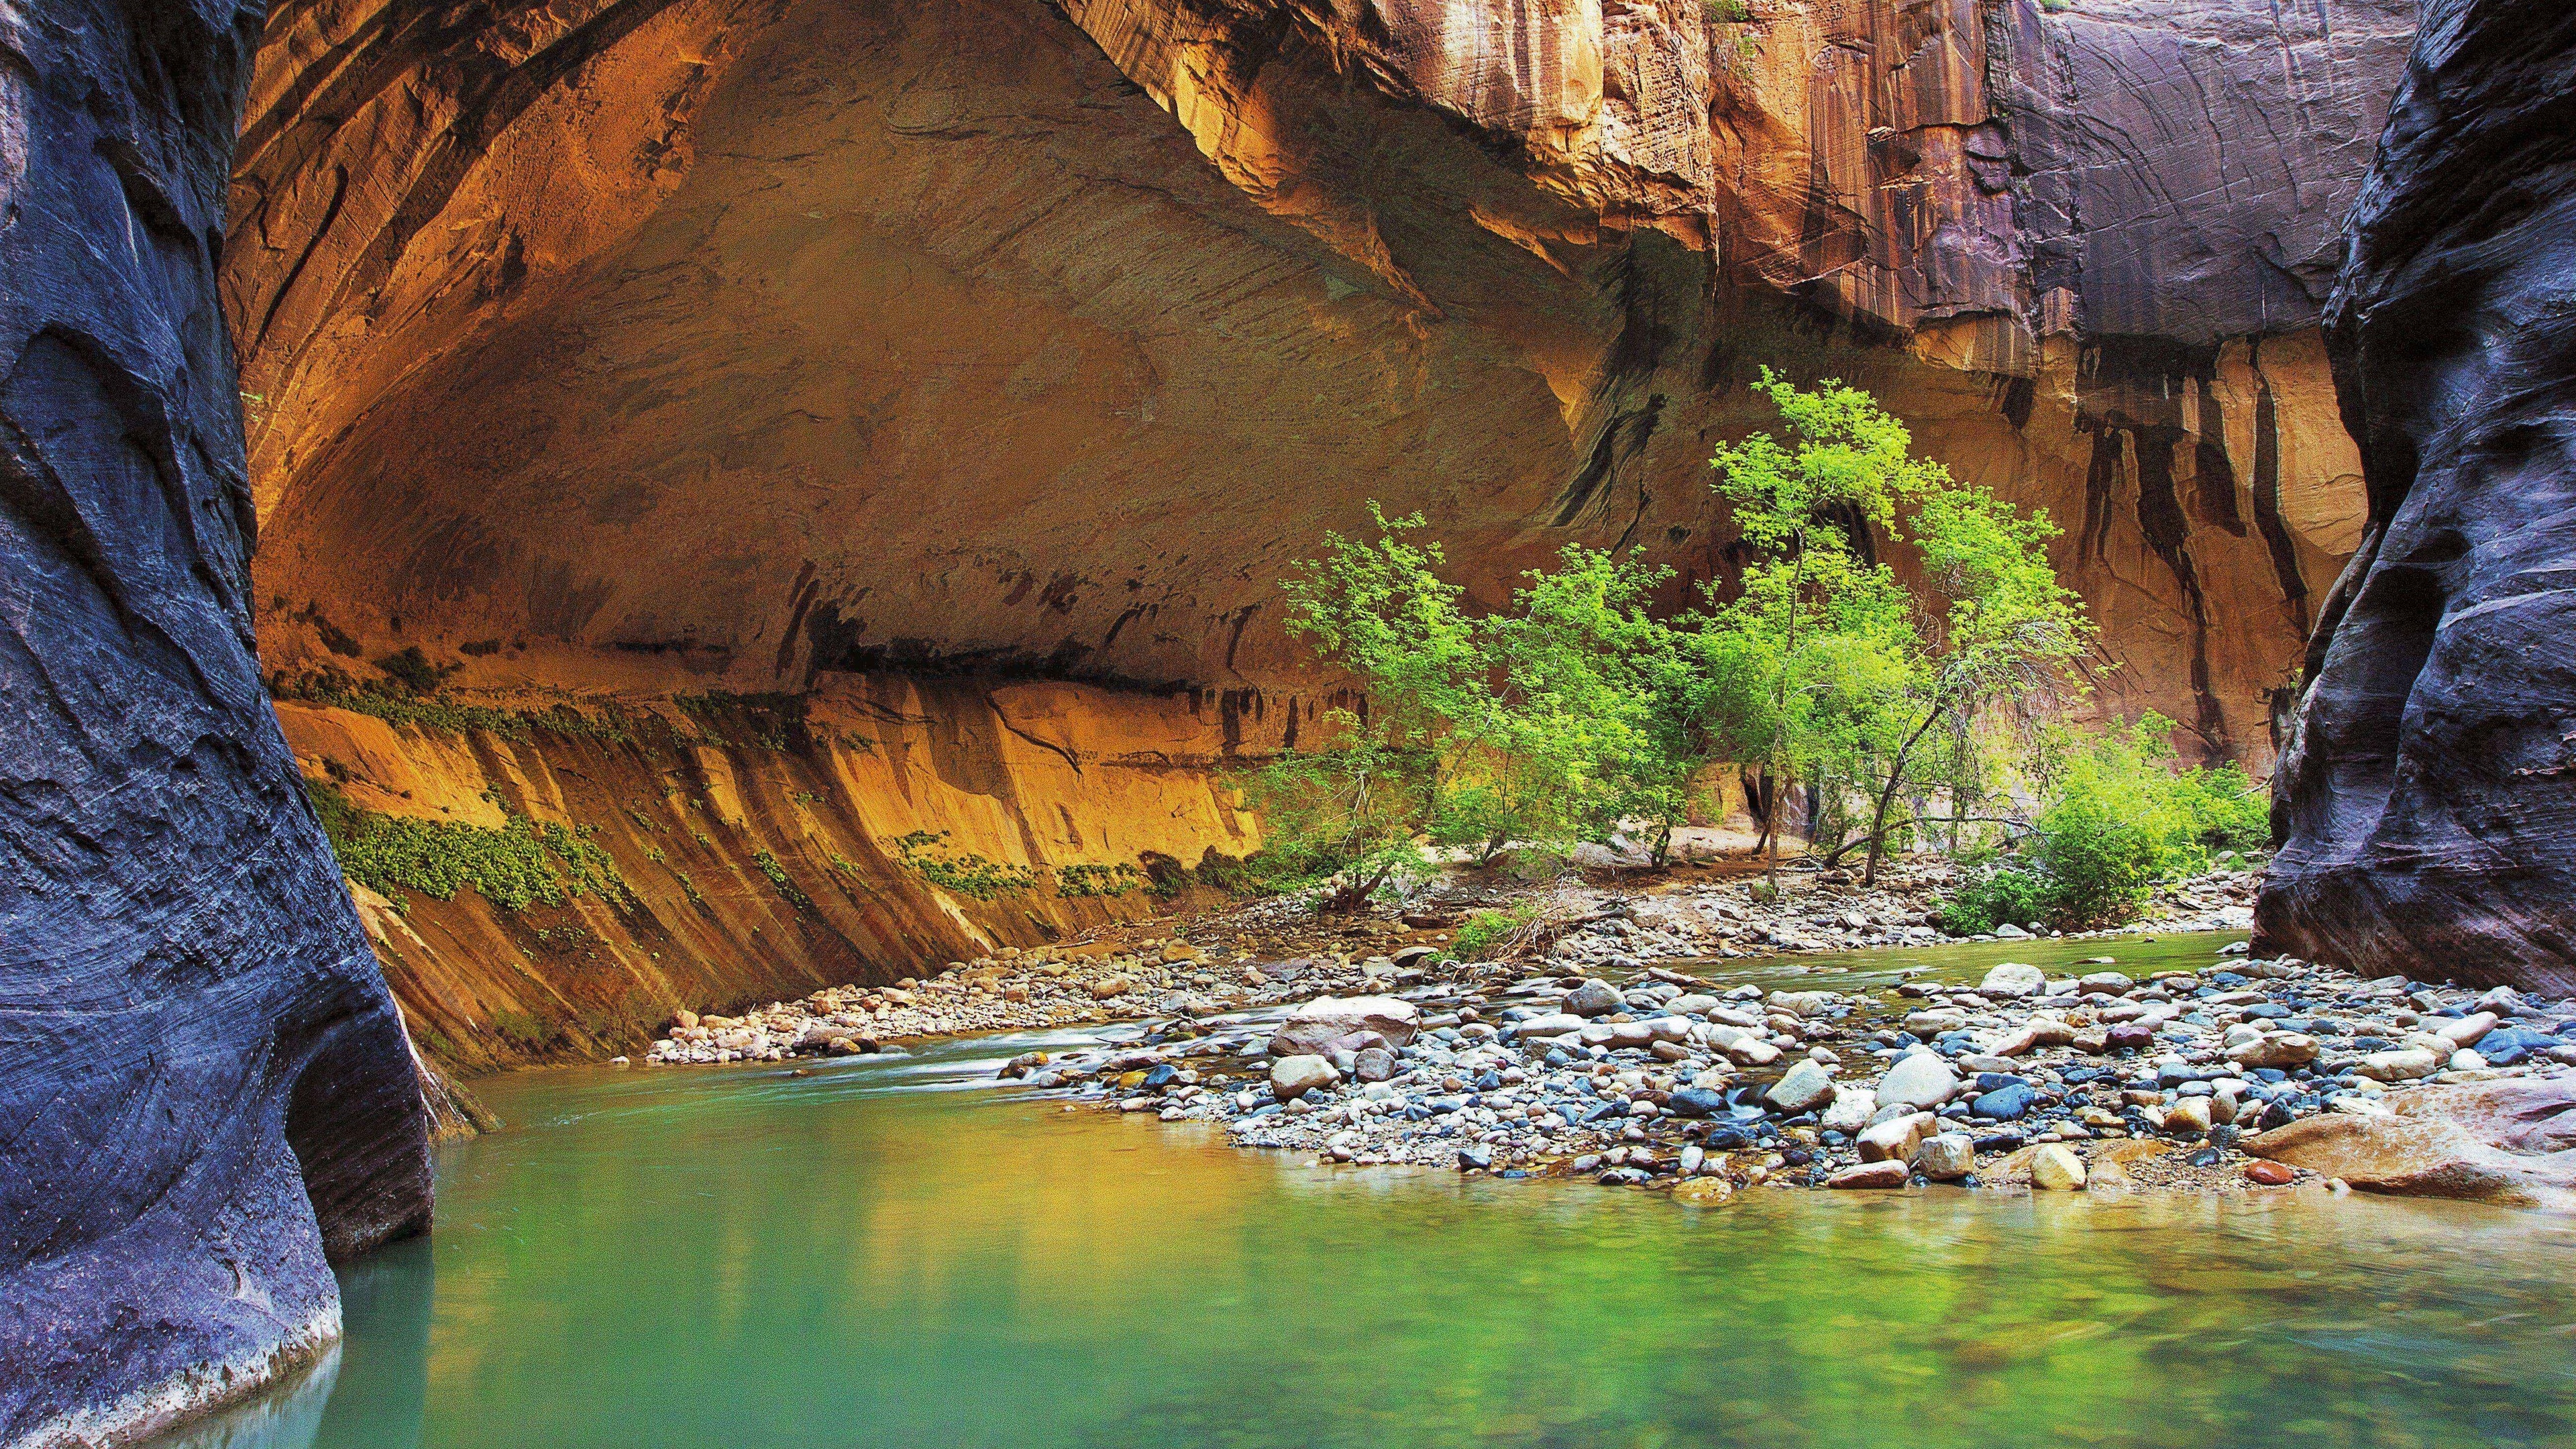 Zion National Park, Beautiful wallpaper, Zoey Simpson's post, Nature's sanctuary, 3840x2160 4K Desktop